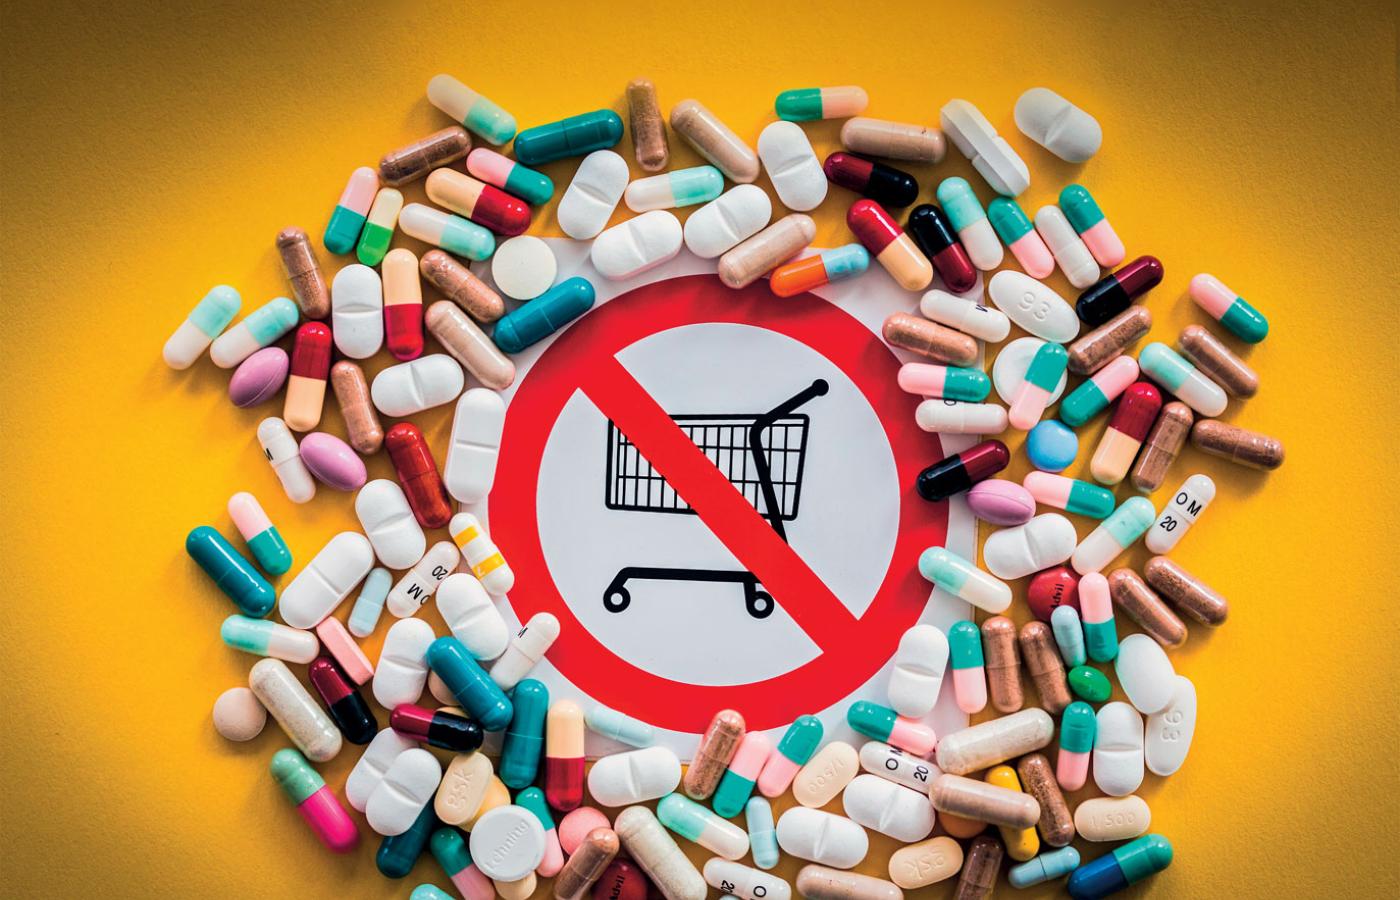 W polskich aptekach brakuje leków. Ministerstwo Zdrowia zabiera głos